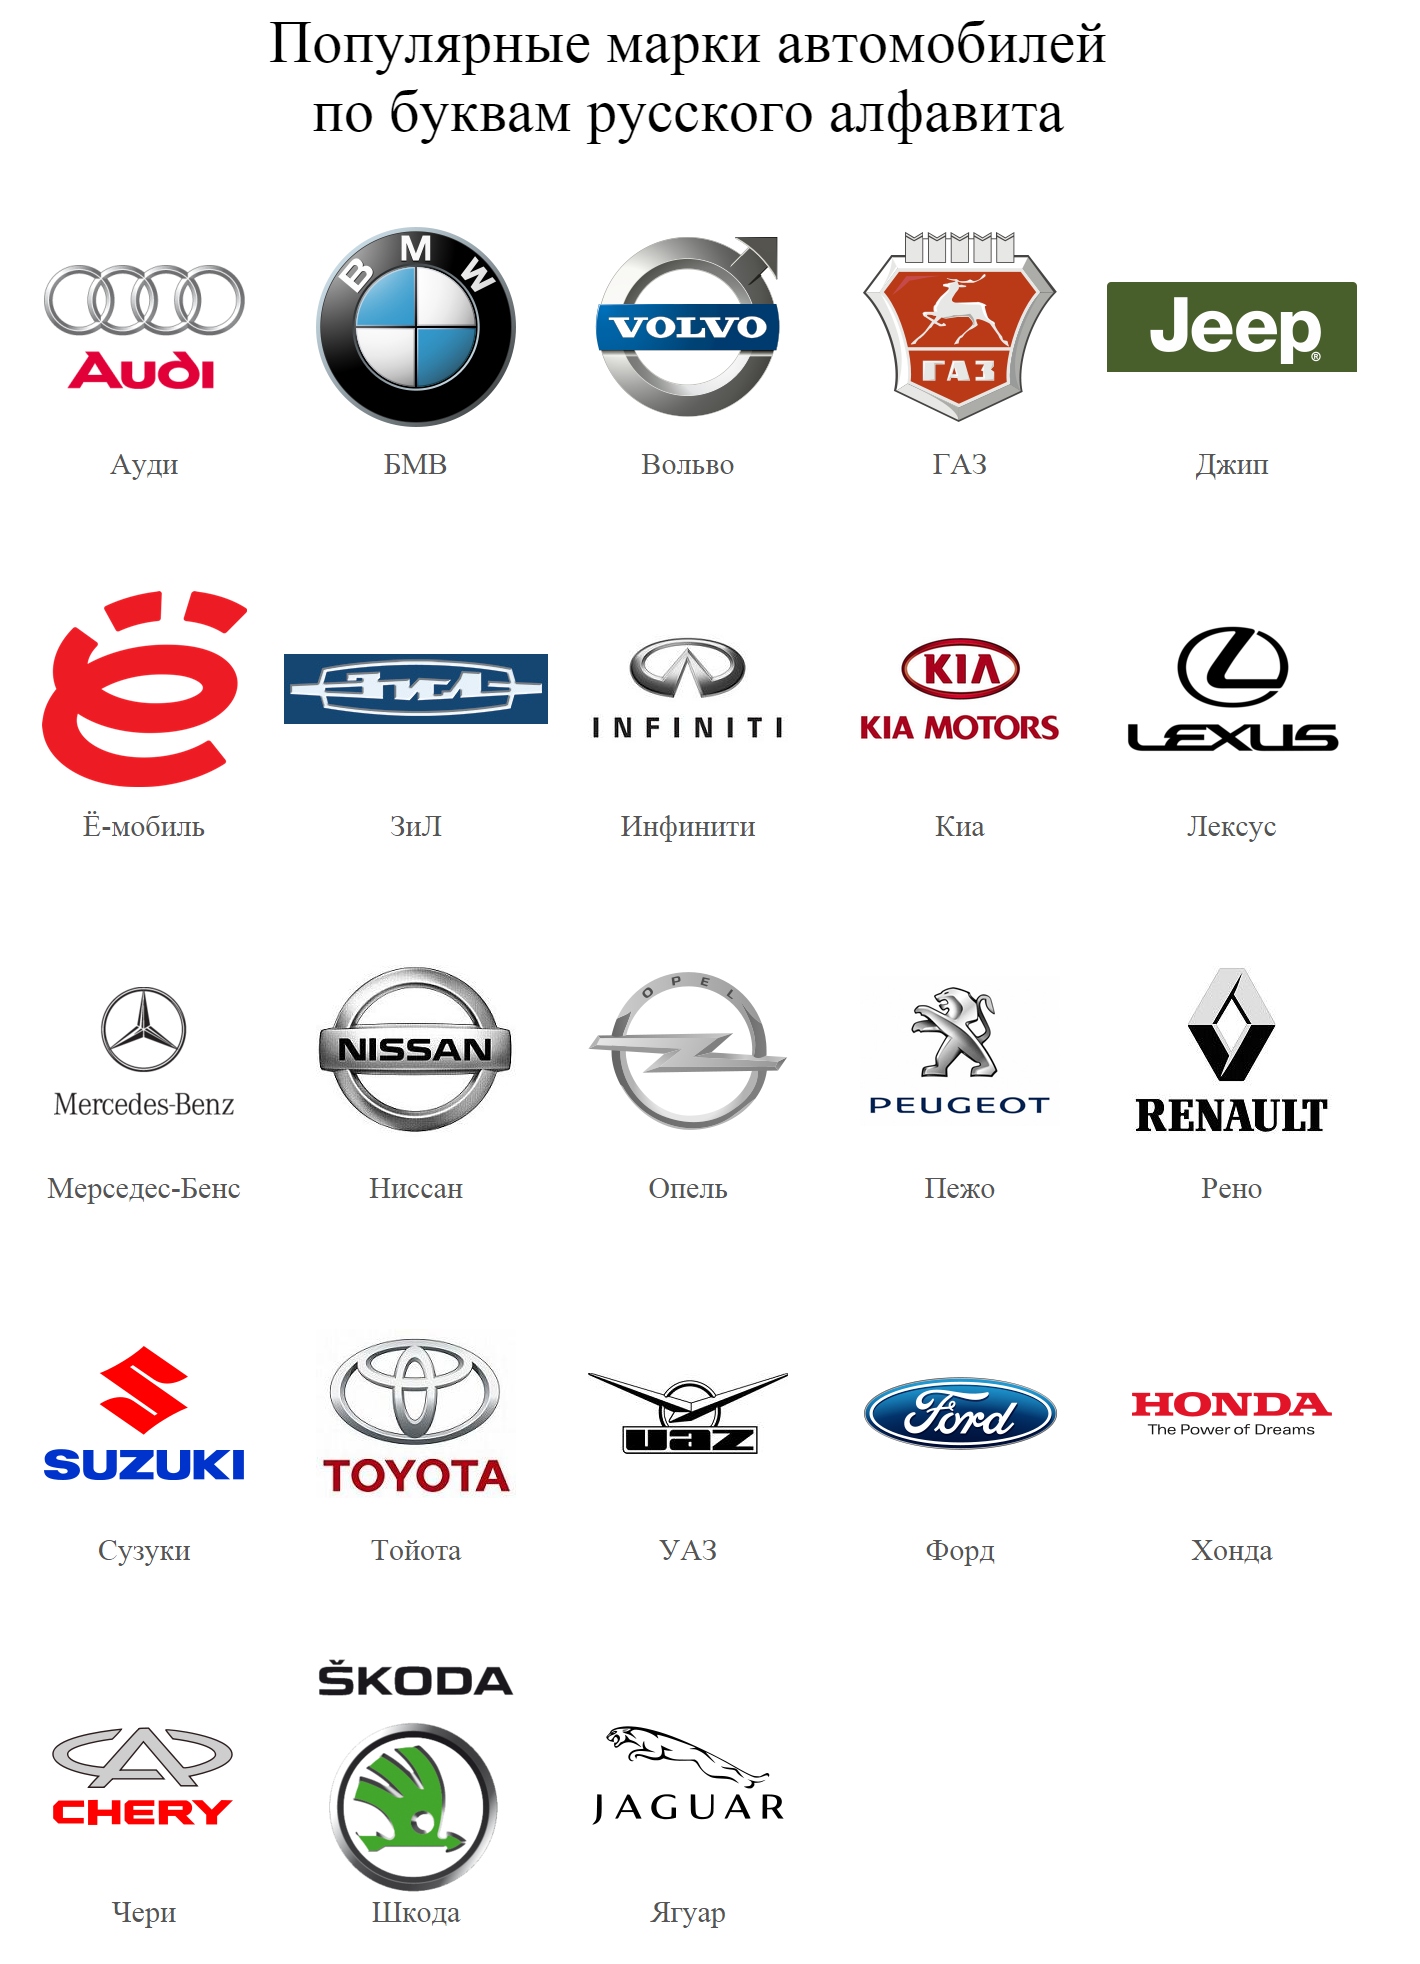 Система обозначения индексов моделей для отечественных авто